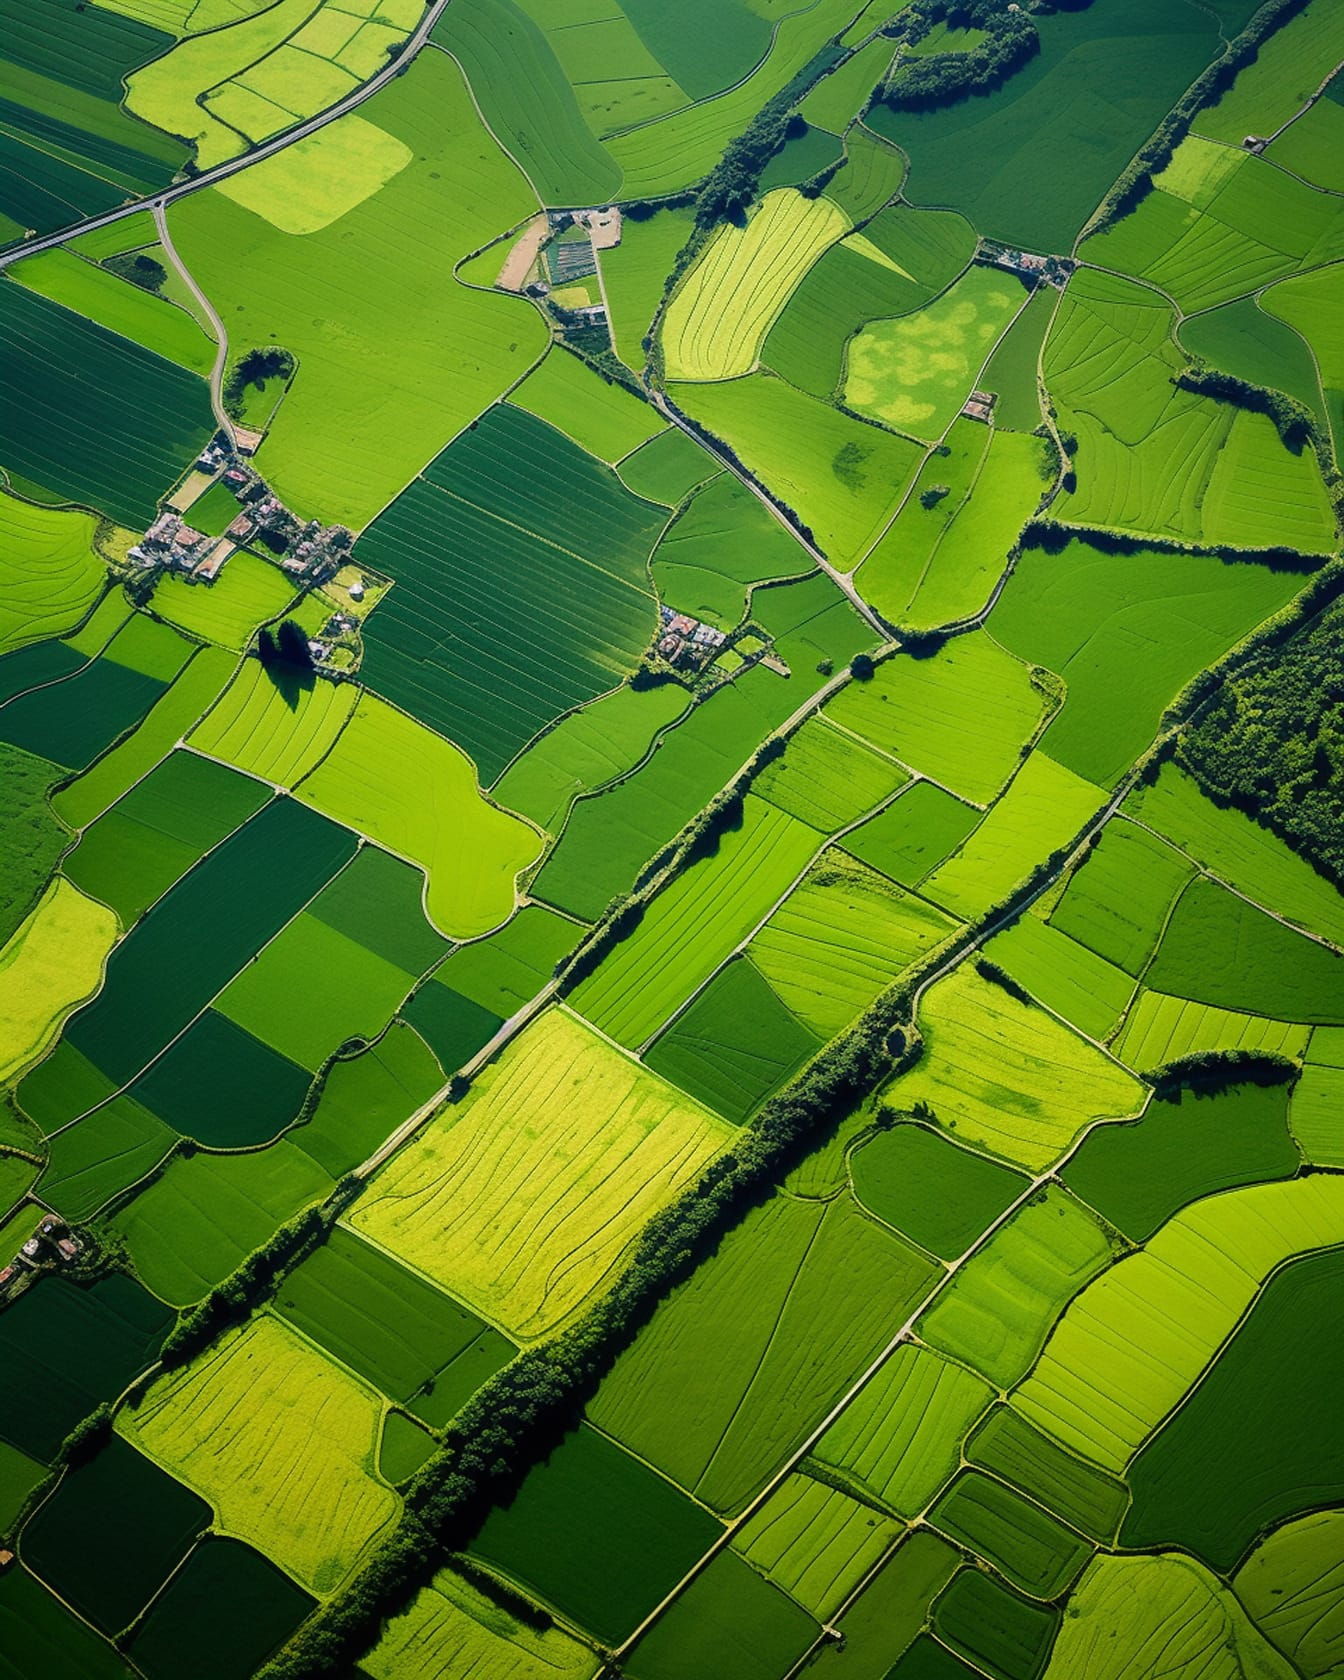 Luftbild von grünlich-gelben Feldern im ländlichen Raum